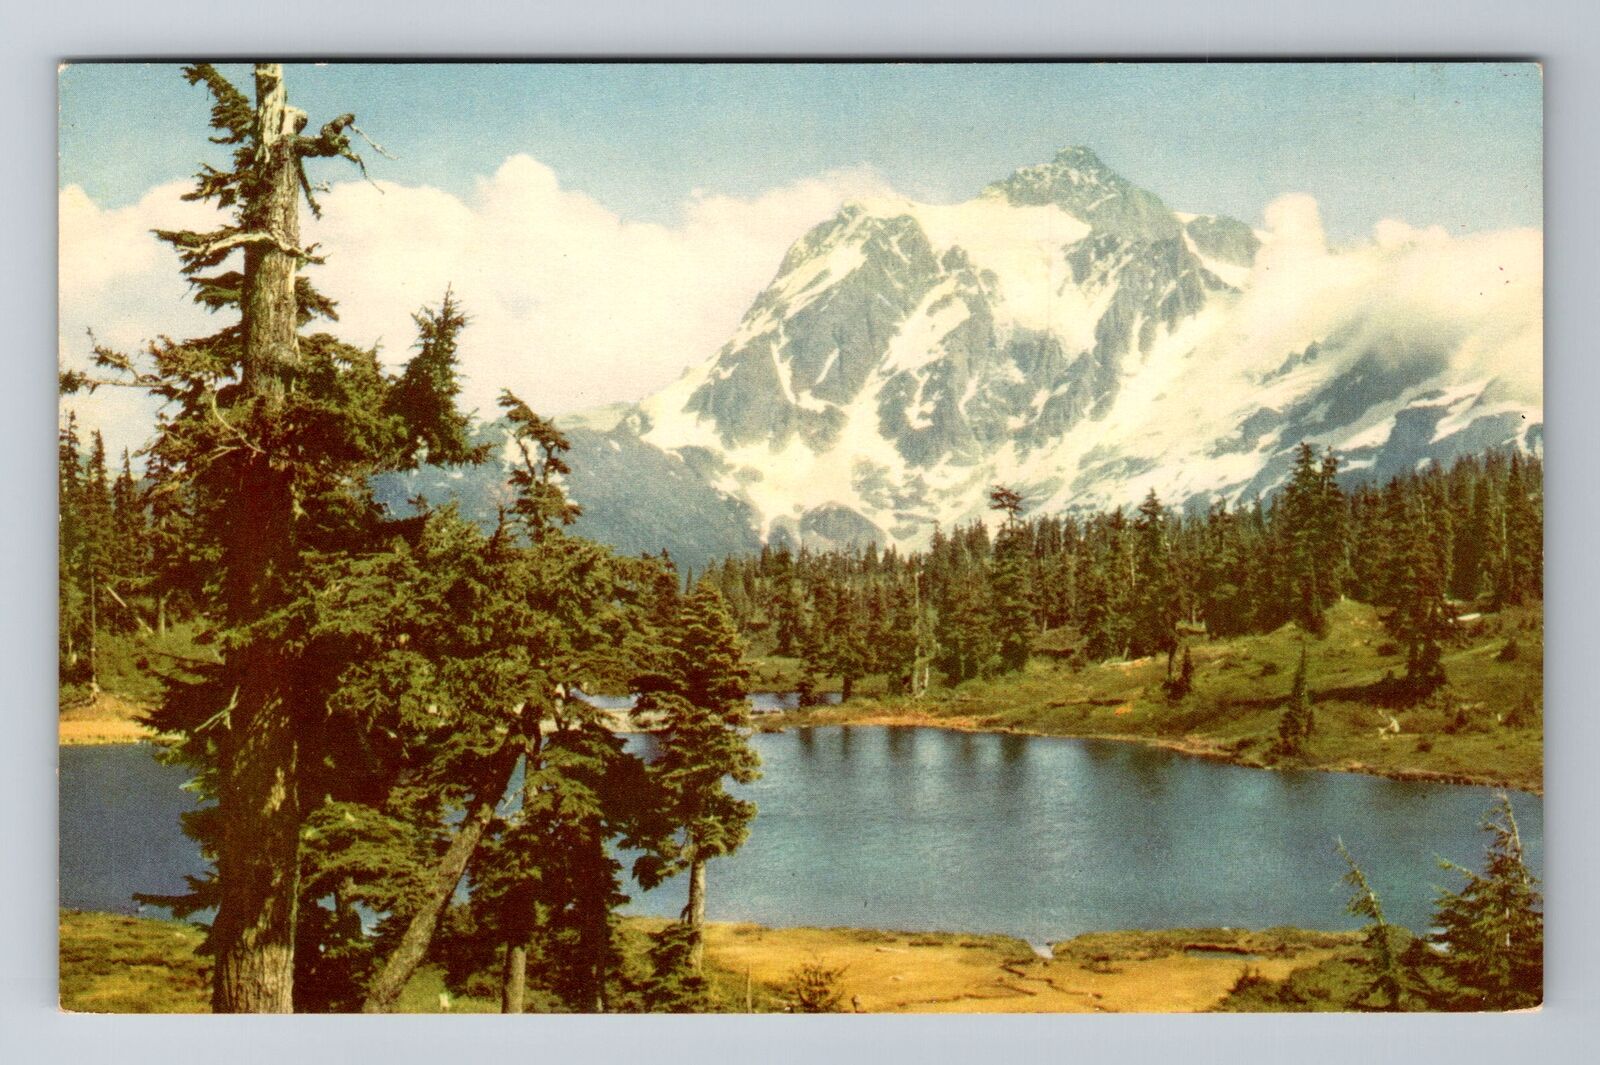 WA-Washington, Mount Shuksan, Antique, Vintage Souvenir Postcard